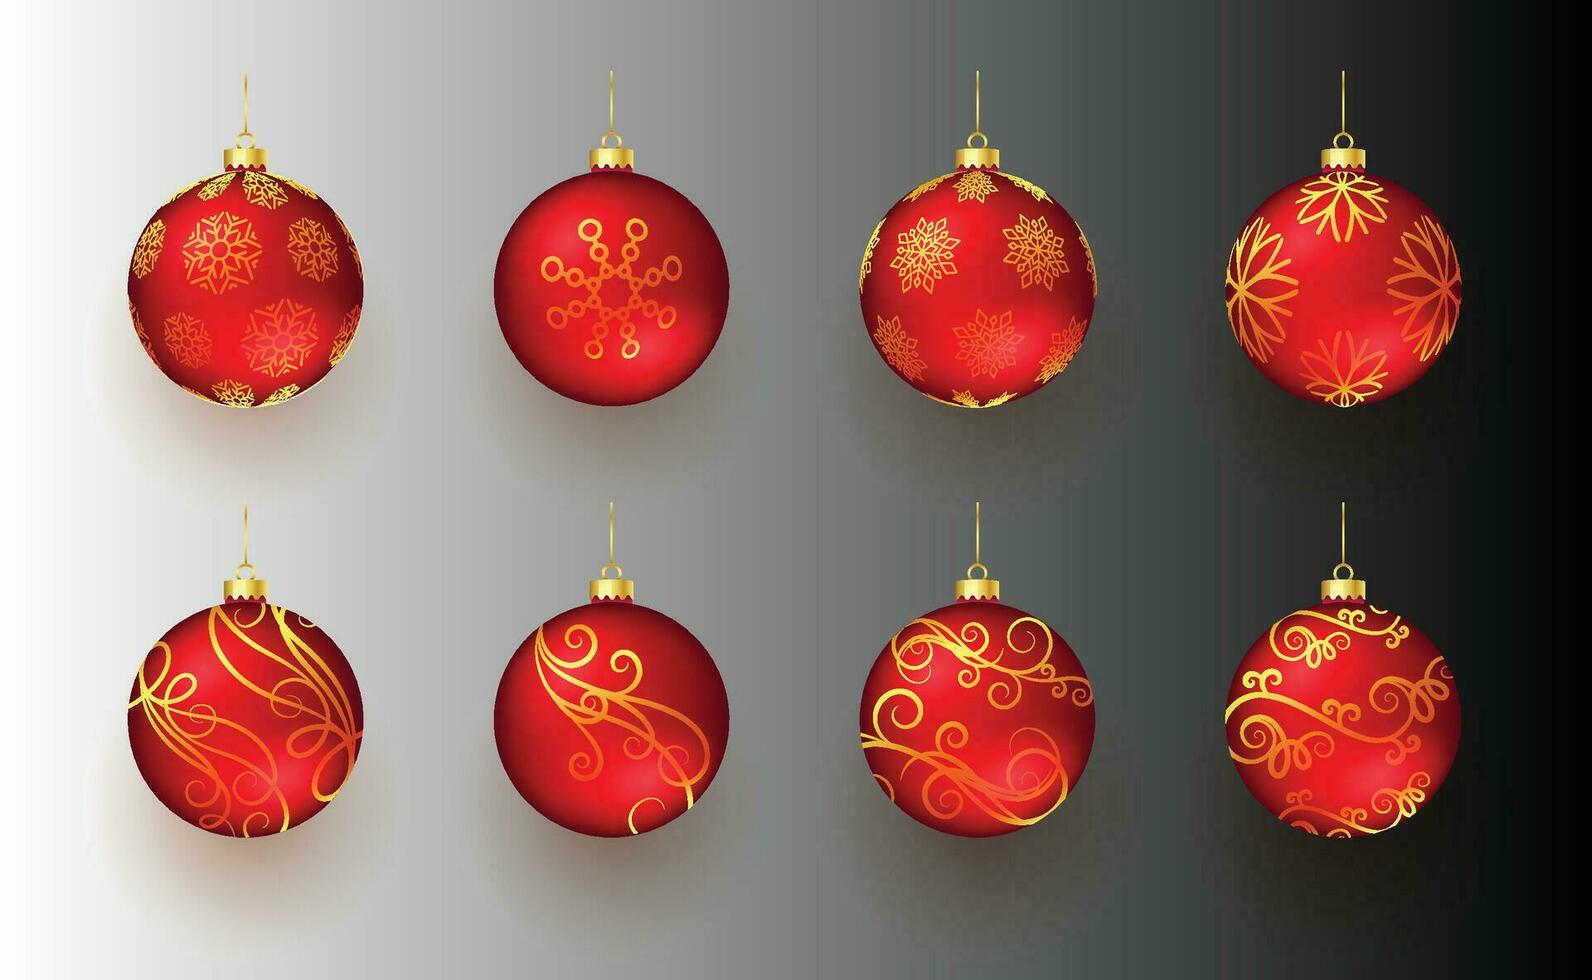 kleurrijk glimmend gloeiend Kerstmis ballen. Kerstmis glas bal. vakantie decoratie sjabloon. vector illustratie.